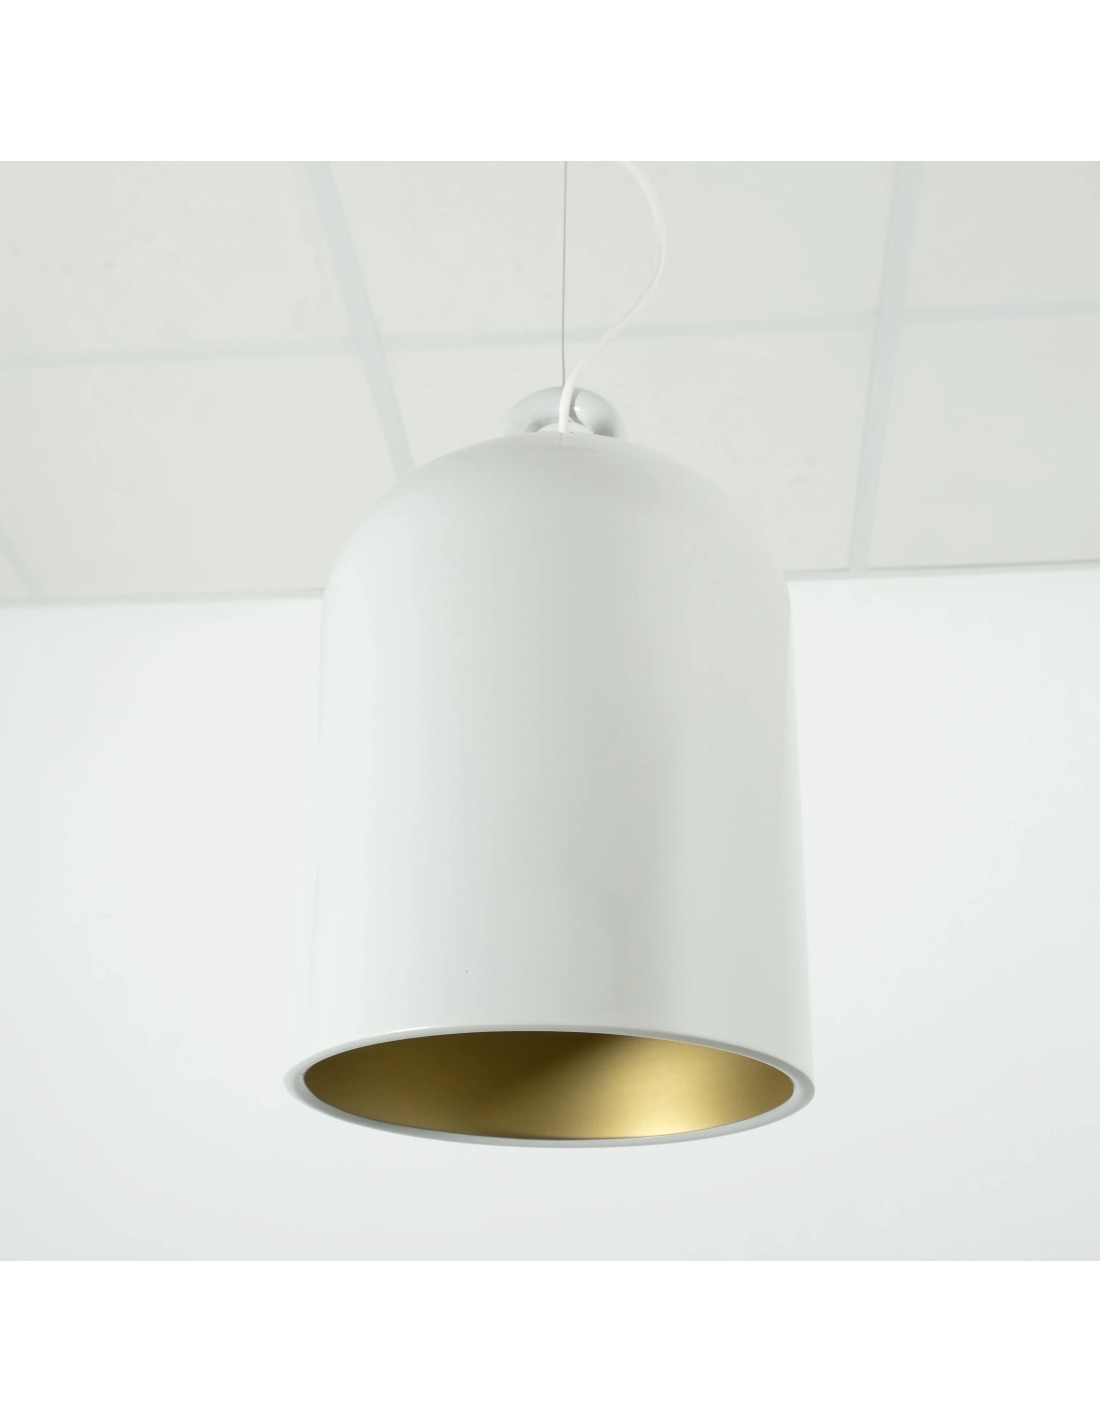 lámpara industrial vintage  idónea para iluminar diseños o decoraciones de estilo industrial-vintage